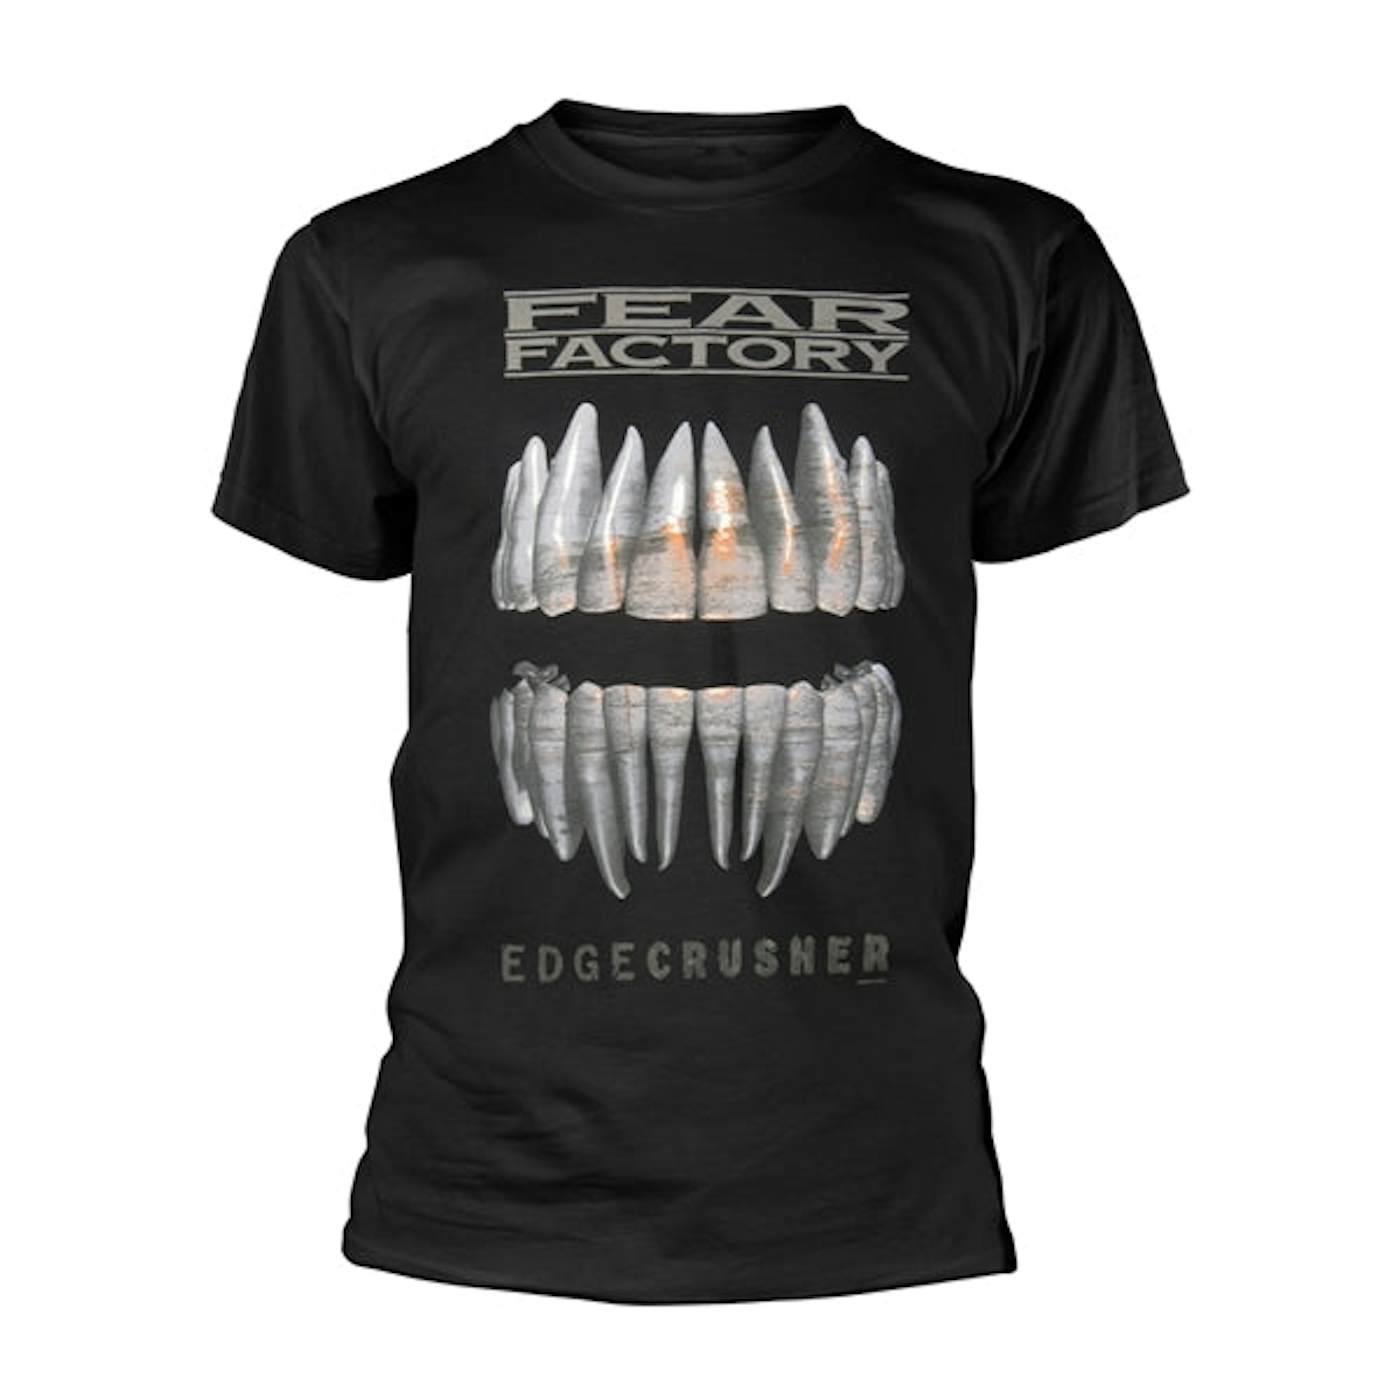 Fear Factory T-Shirt - Edgecrusher